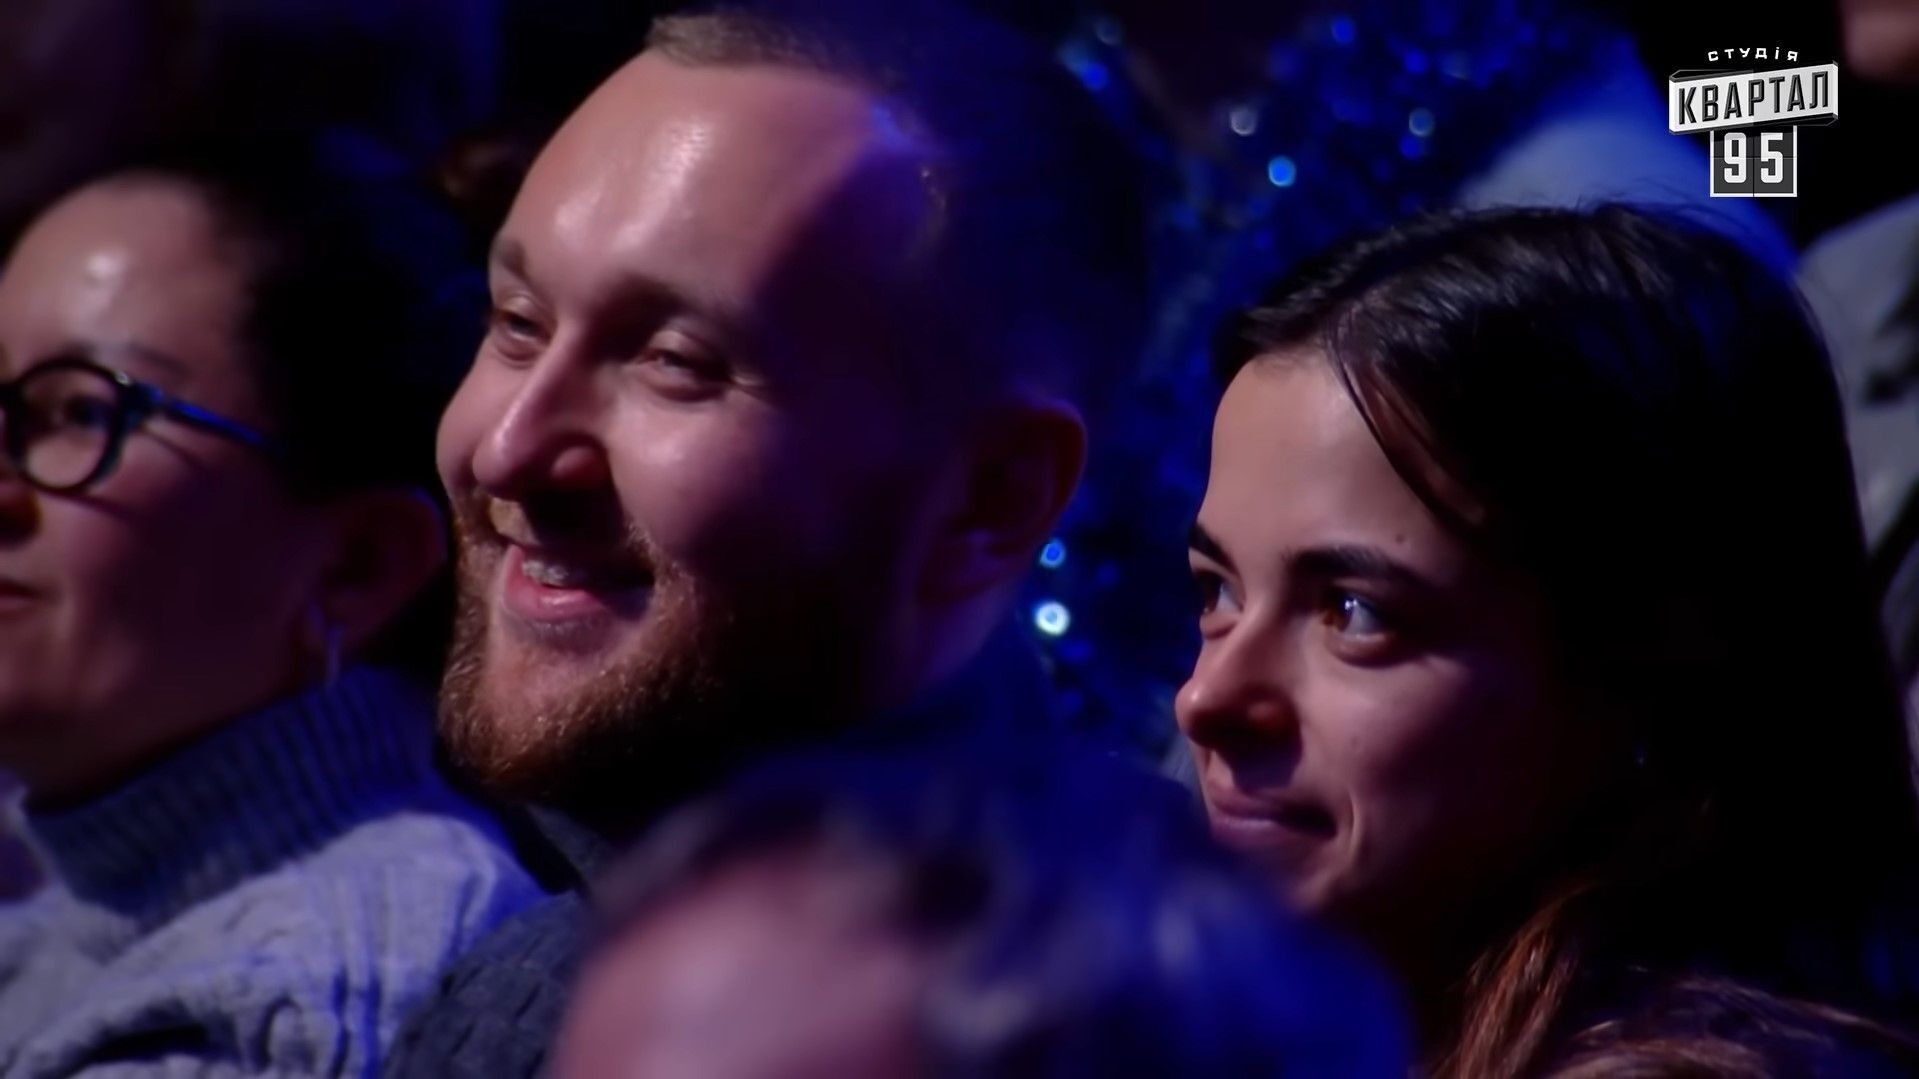 Соня Морозюк развлекалась со своим женихом Романом Гринкевичем на новогоднем концерте 95 квартала